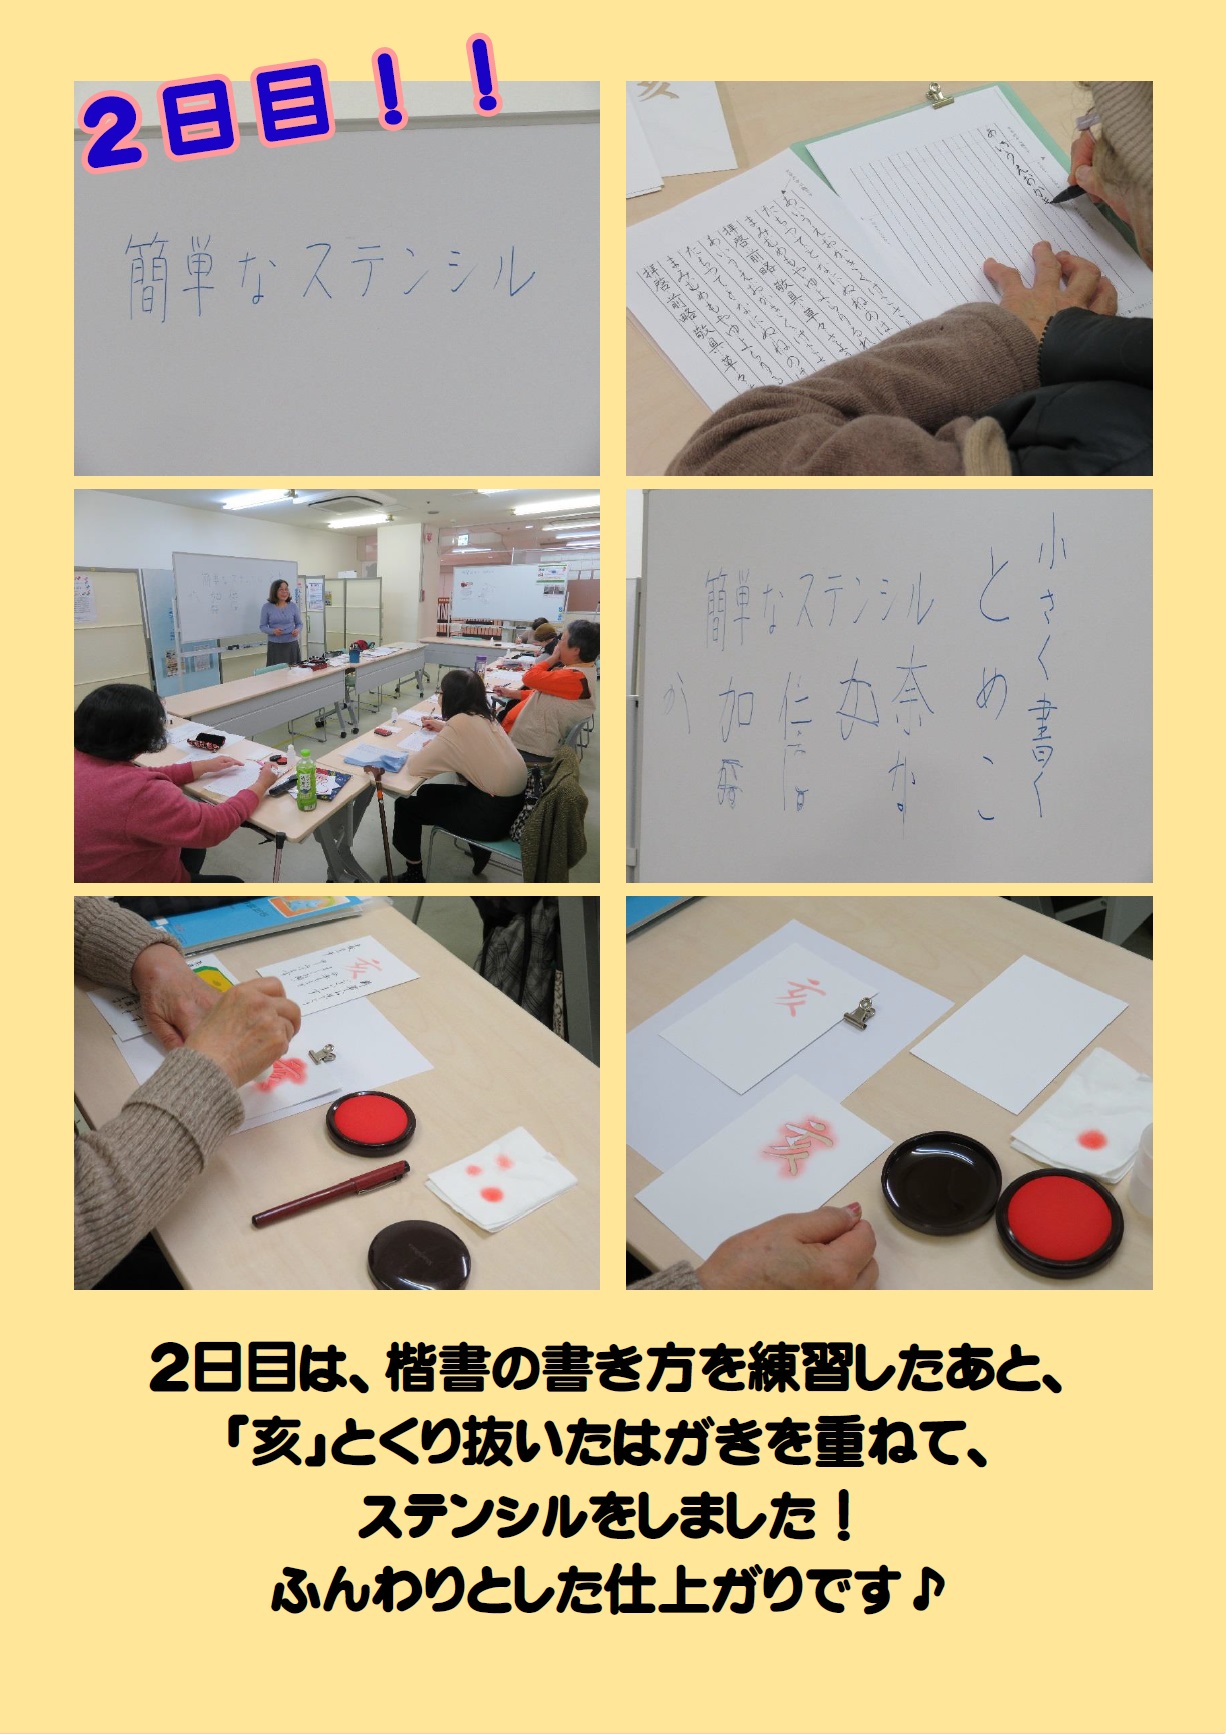 年賀状作り教室 手書き を行いました 活動レポート 熊本市障がい者福祉センター希望荘